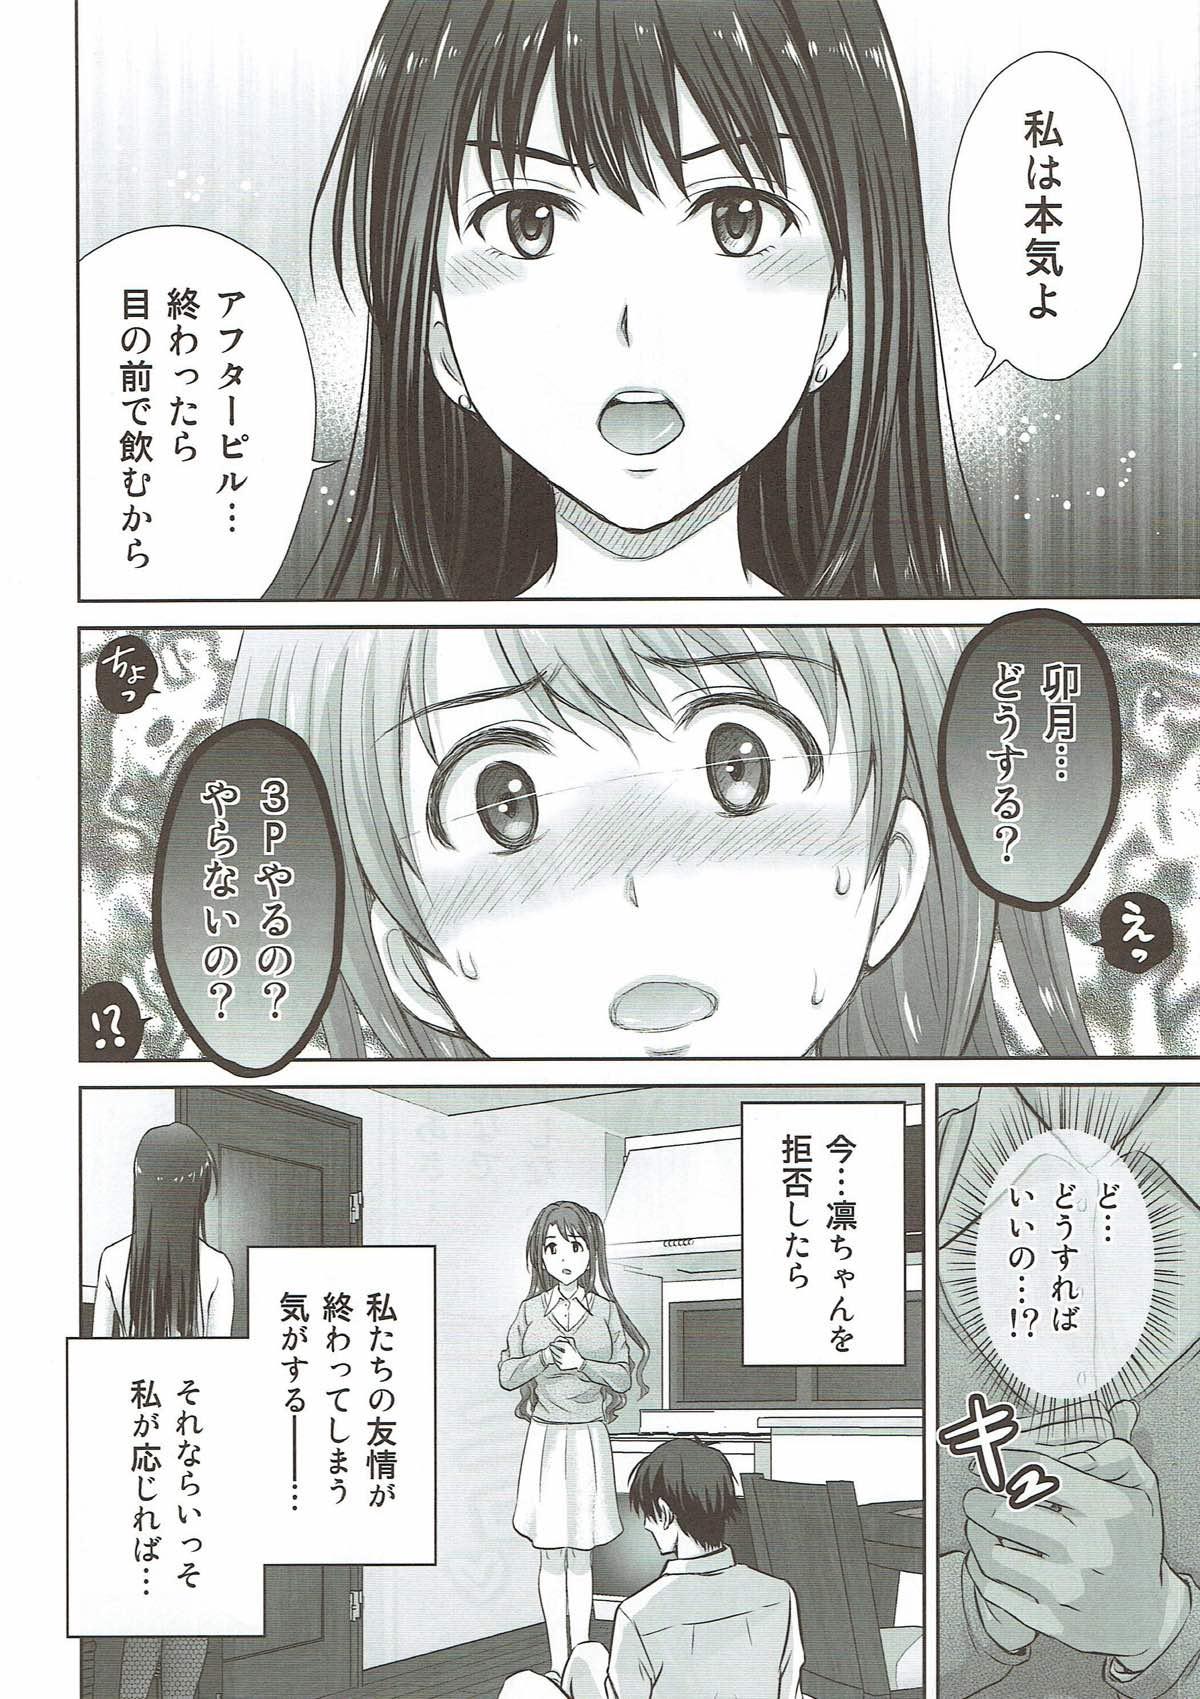  Shibuya Rin 30-sai 2 Uzuki to 3P Shichaimasu!! - The idolmaster Monstercock - Page 9